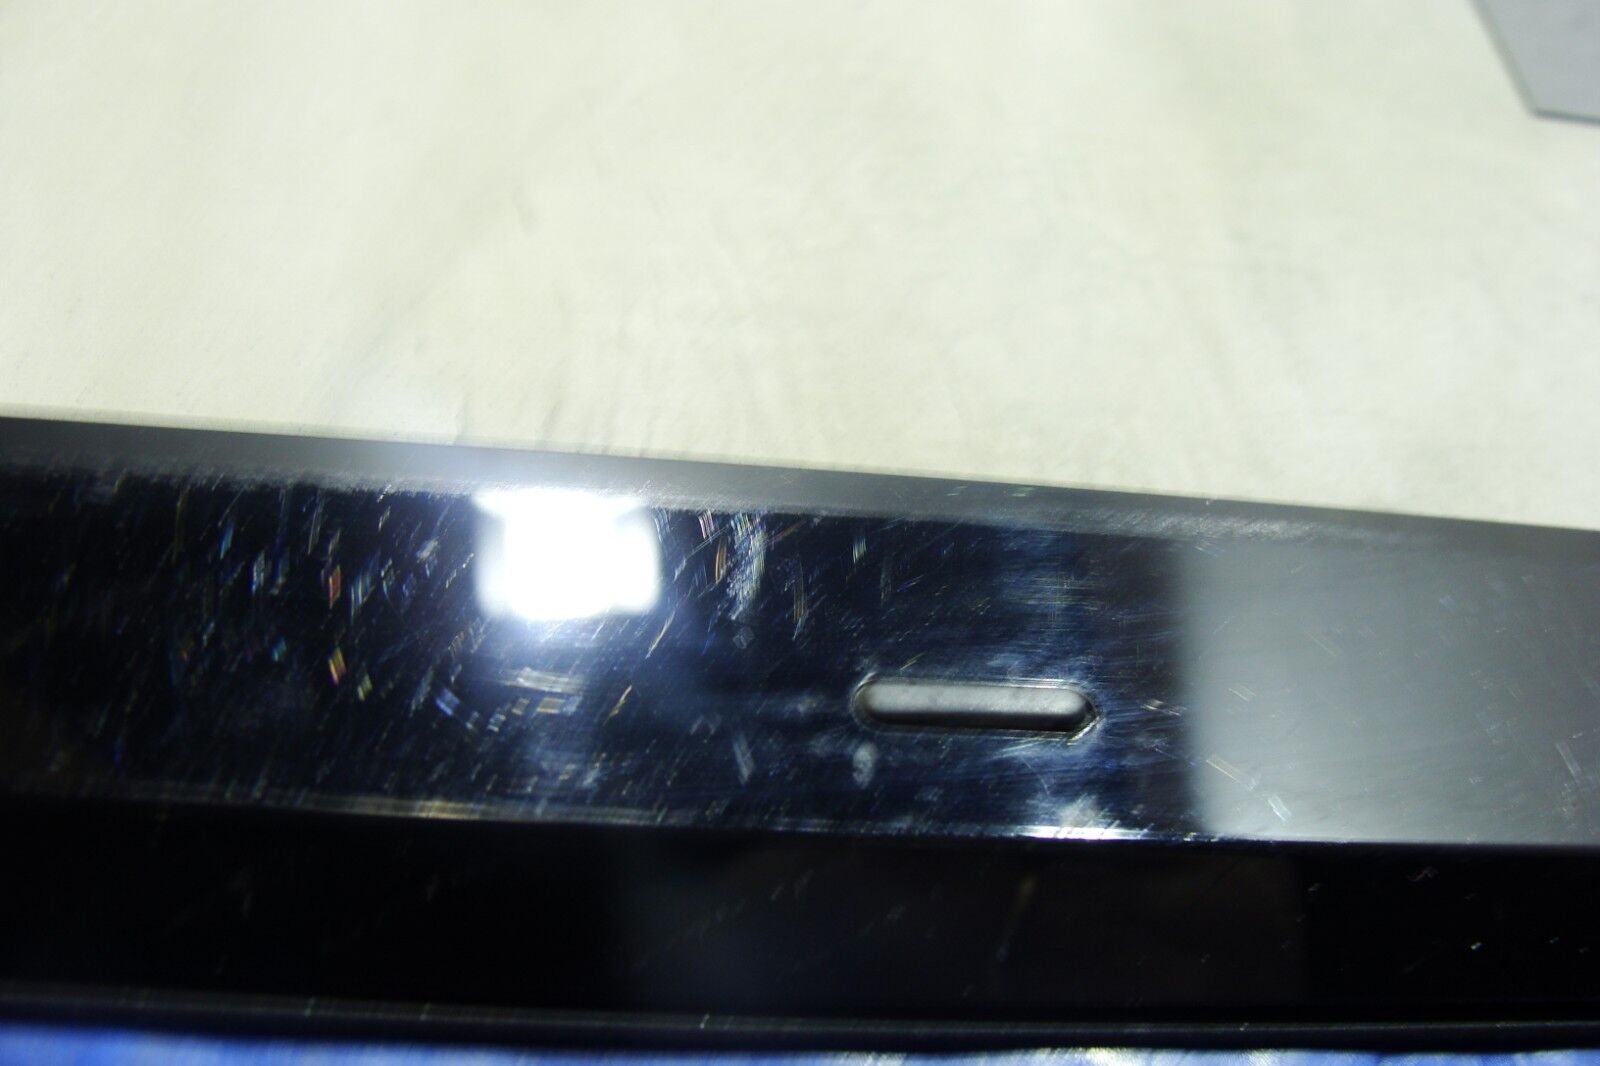 Asus 13.3 U36JC-RX296V Genuine Laptop LCD Back Cover w/Front Bezel Black